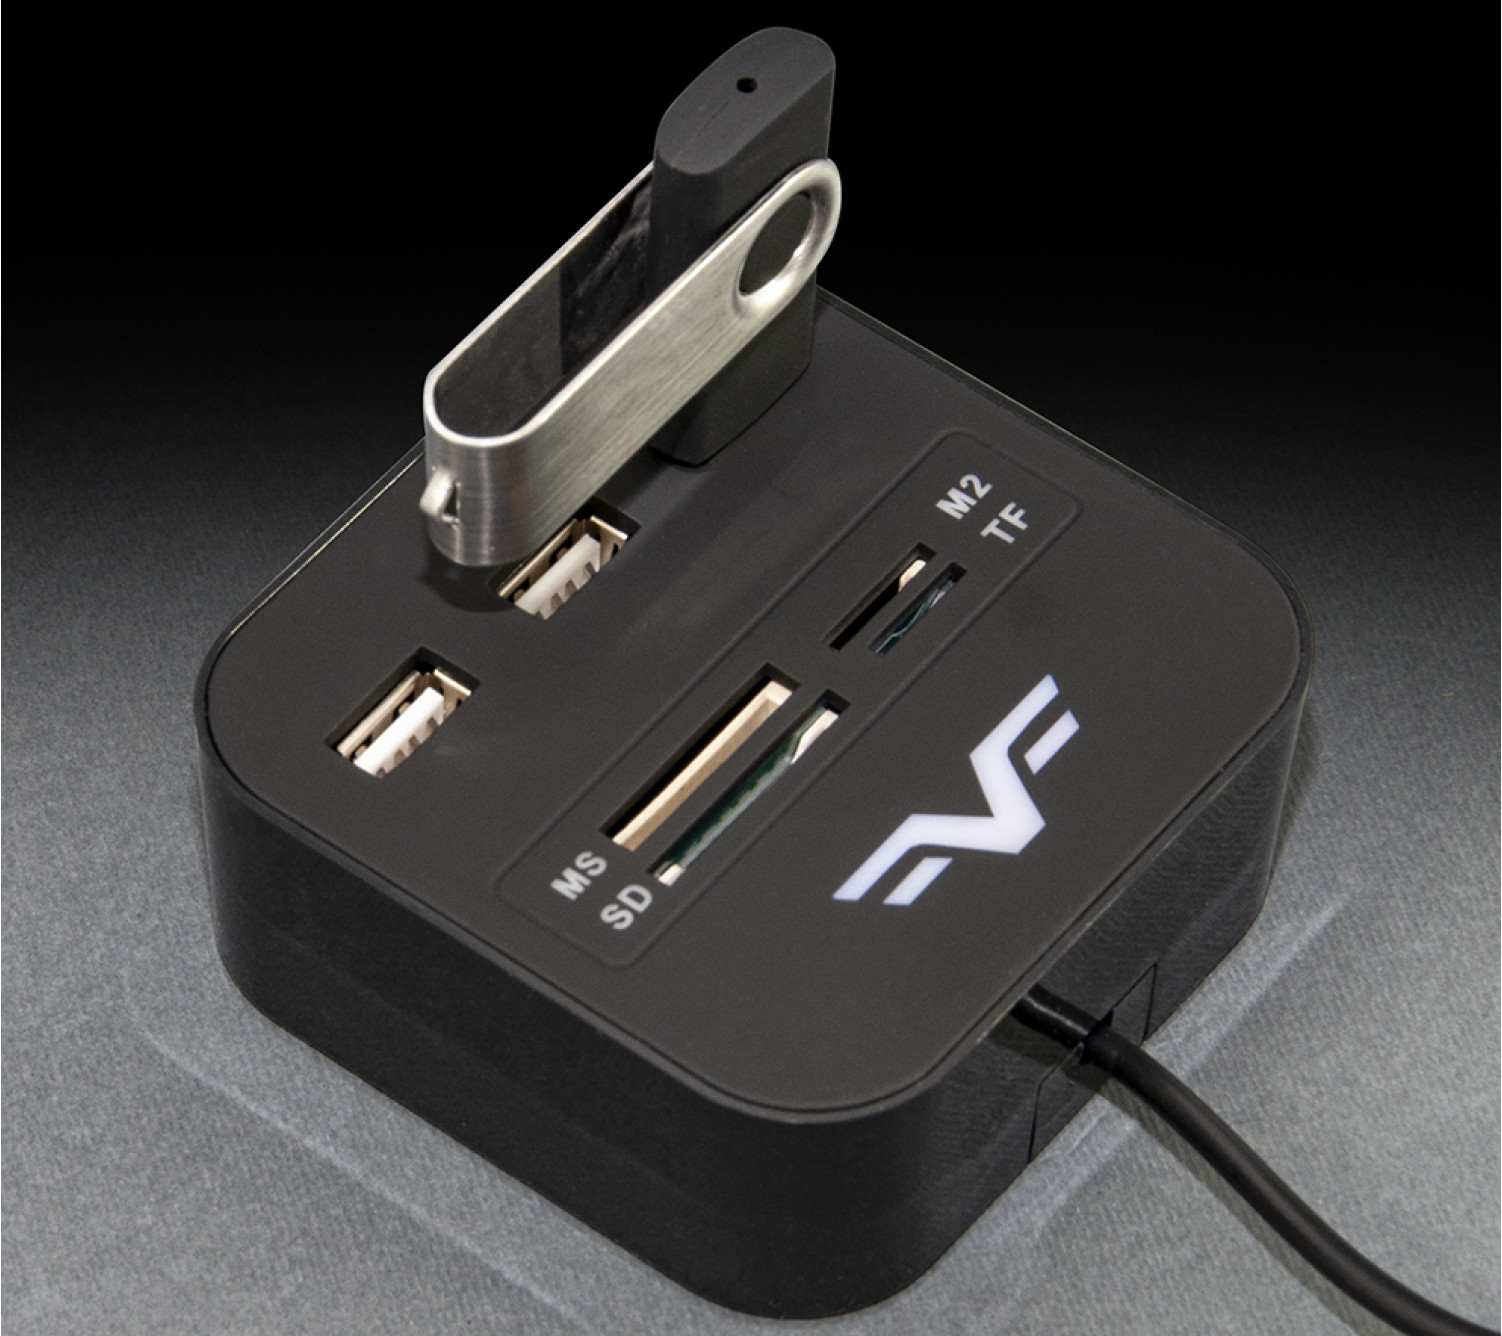 3-х портовий USB-хаб Frime з картрідером All-in-One Black